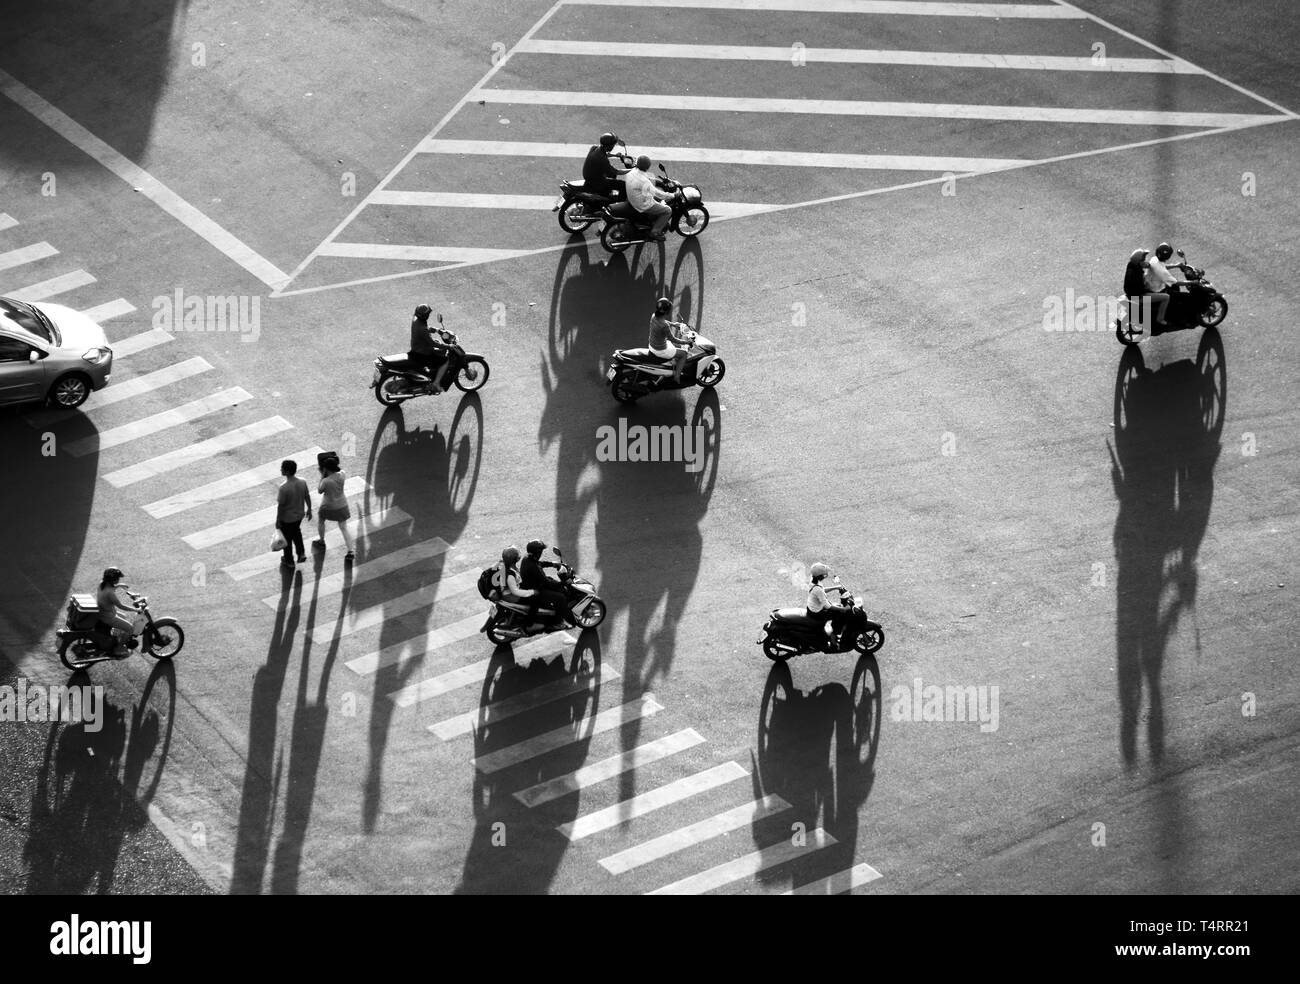 Erstaunlich hohes Ansehen street der asiatischen Stadt, vietnamesische Volk Verkehr, Motorrad, Auto, Wandern, Schatten auf Fahrbahn eindruck Übersicht Stockfoto